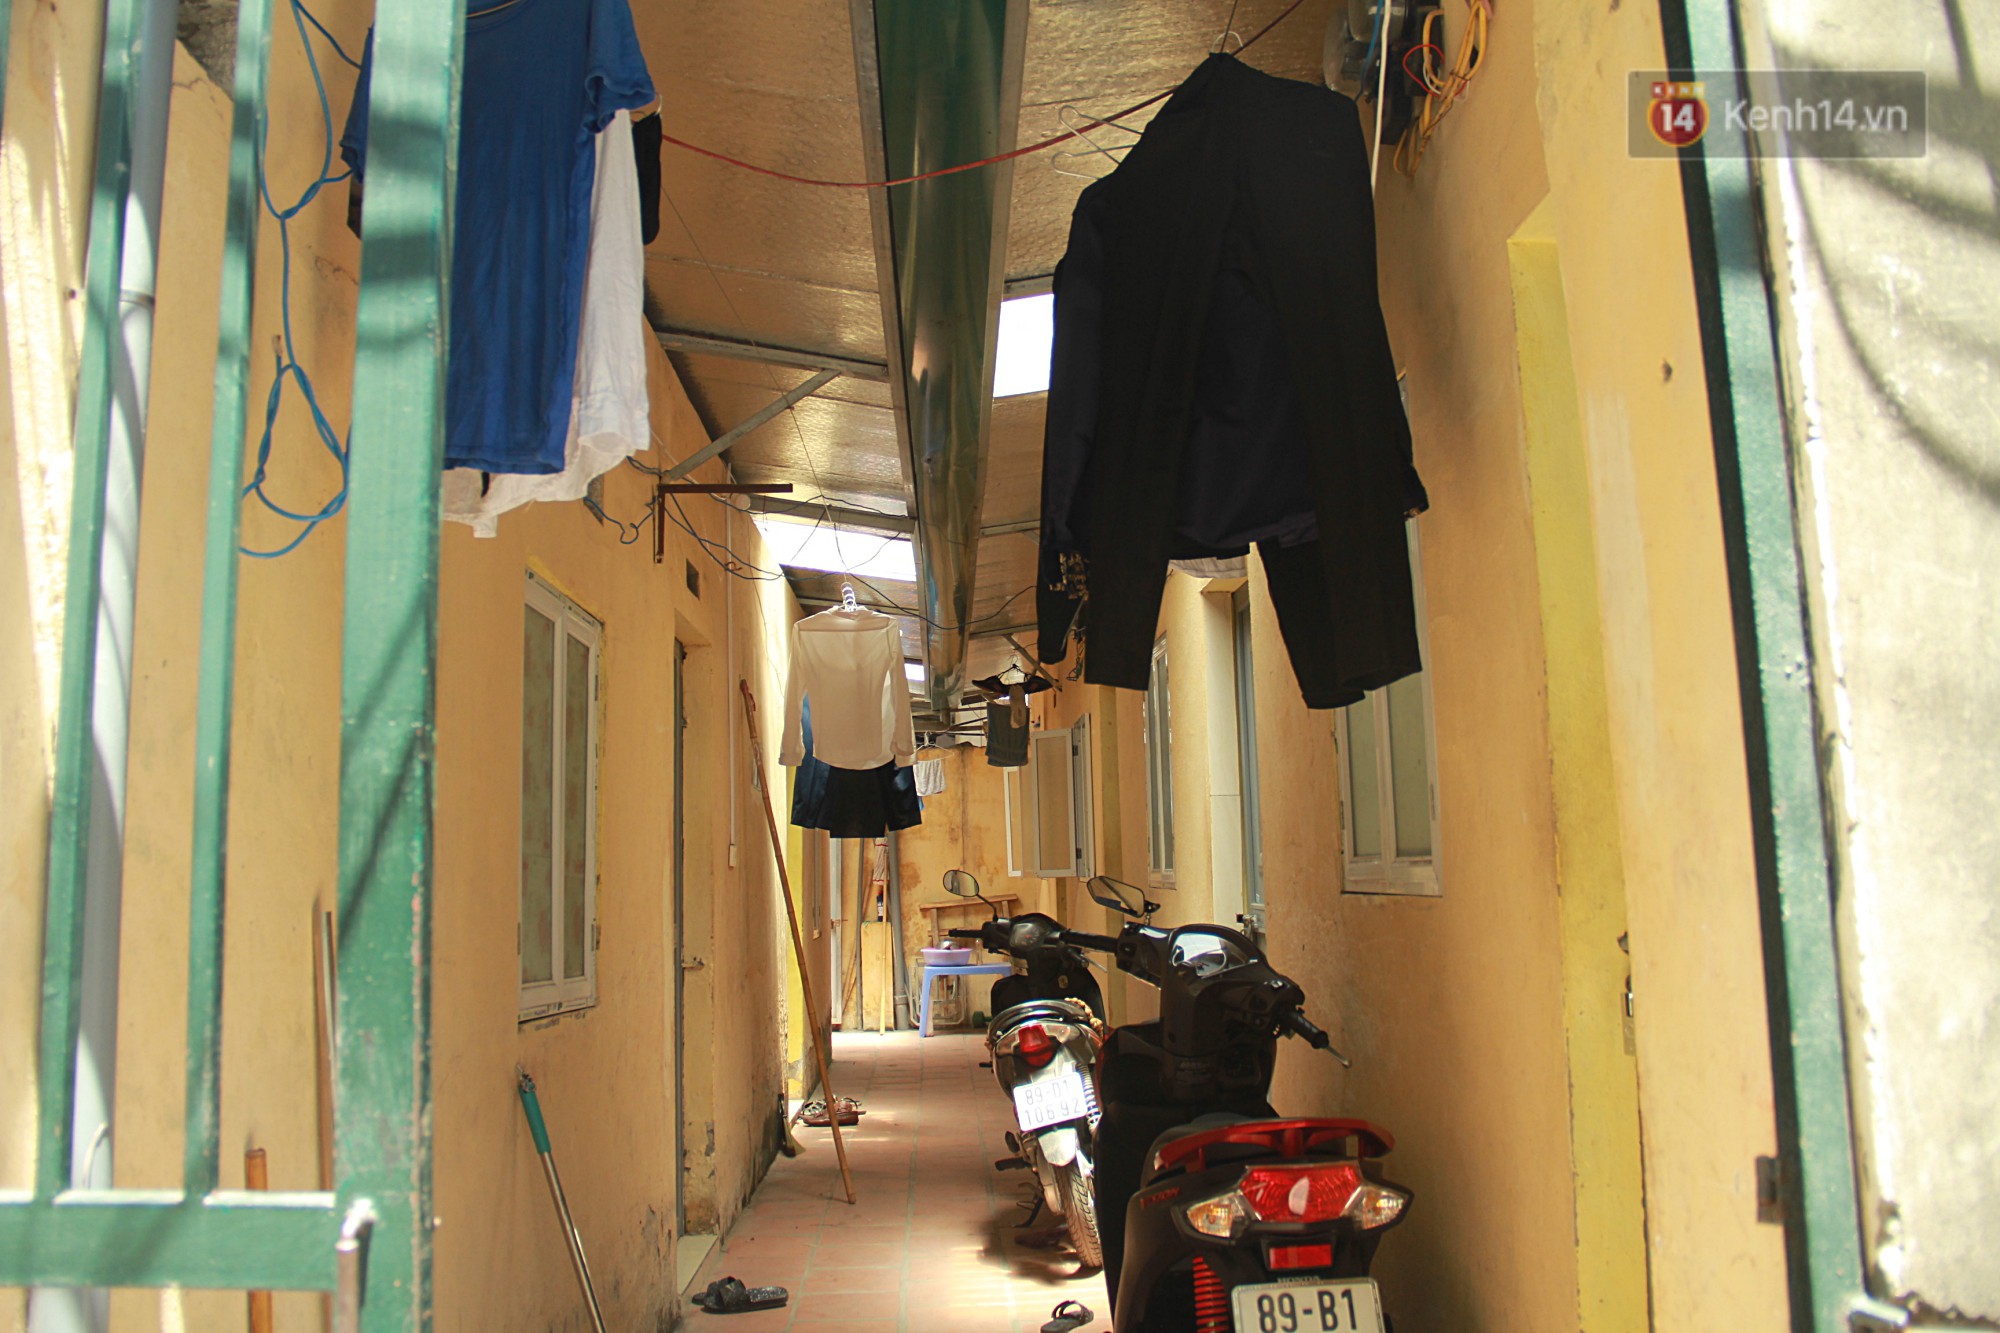 Dân xóm nghèo oằn mình trong những căn phòng trọ lợp mái tôn gần 50 độ C giữa lòng Hà Nội: Cái nóng hầm hập như muốn luộc chín người-7